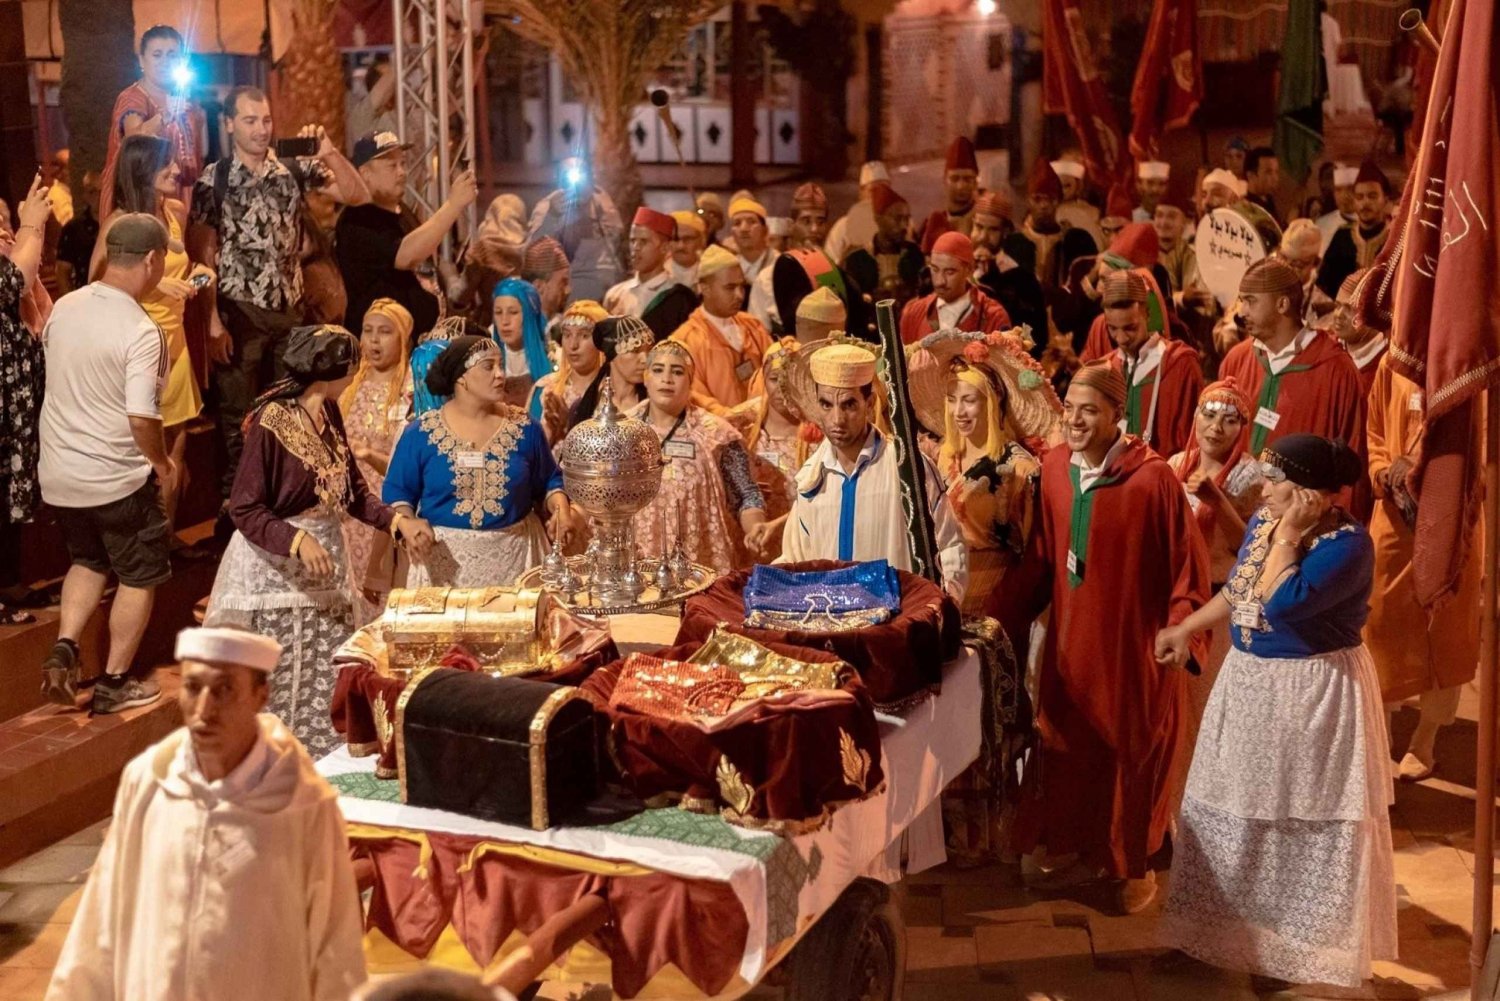 Serata a Marrakech: Cena e spettacolo di cavalieri presso Chez Ali